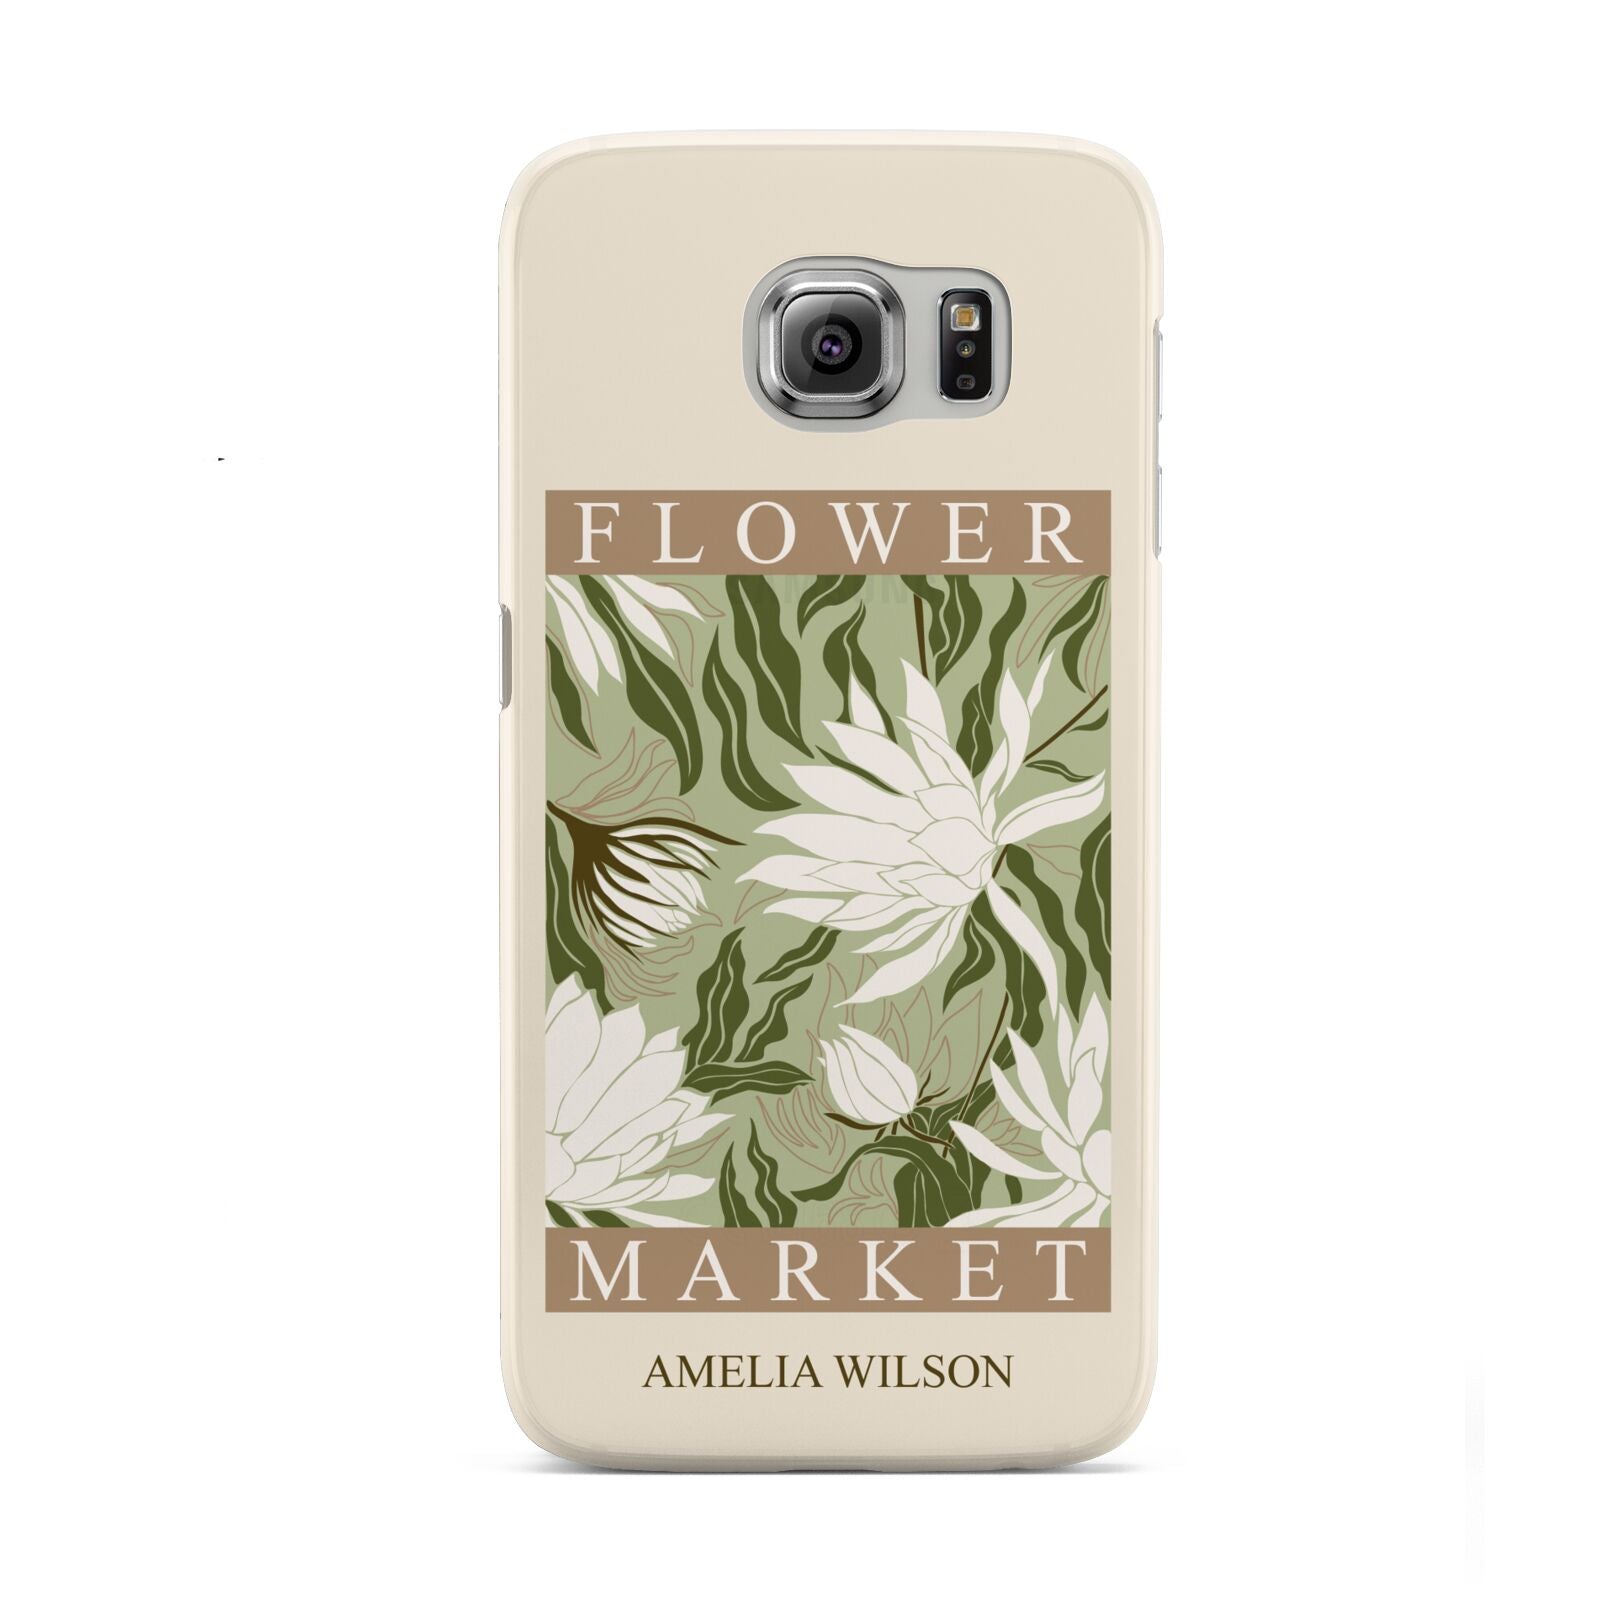 Tokyo Flower Market Samsung Galaxy S6 Case